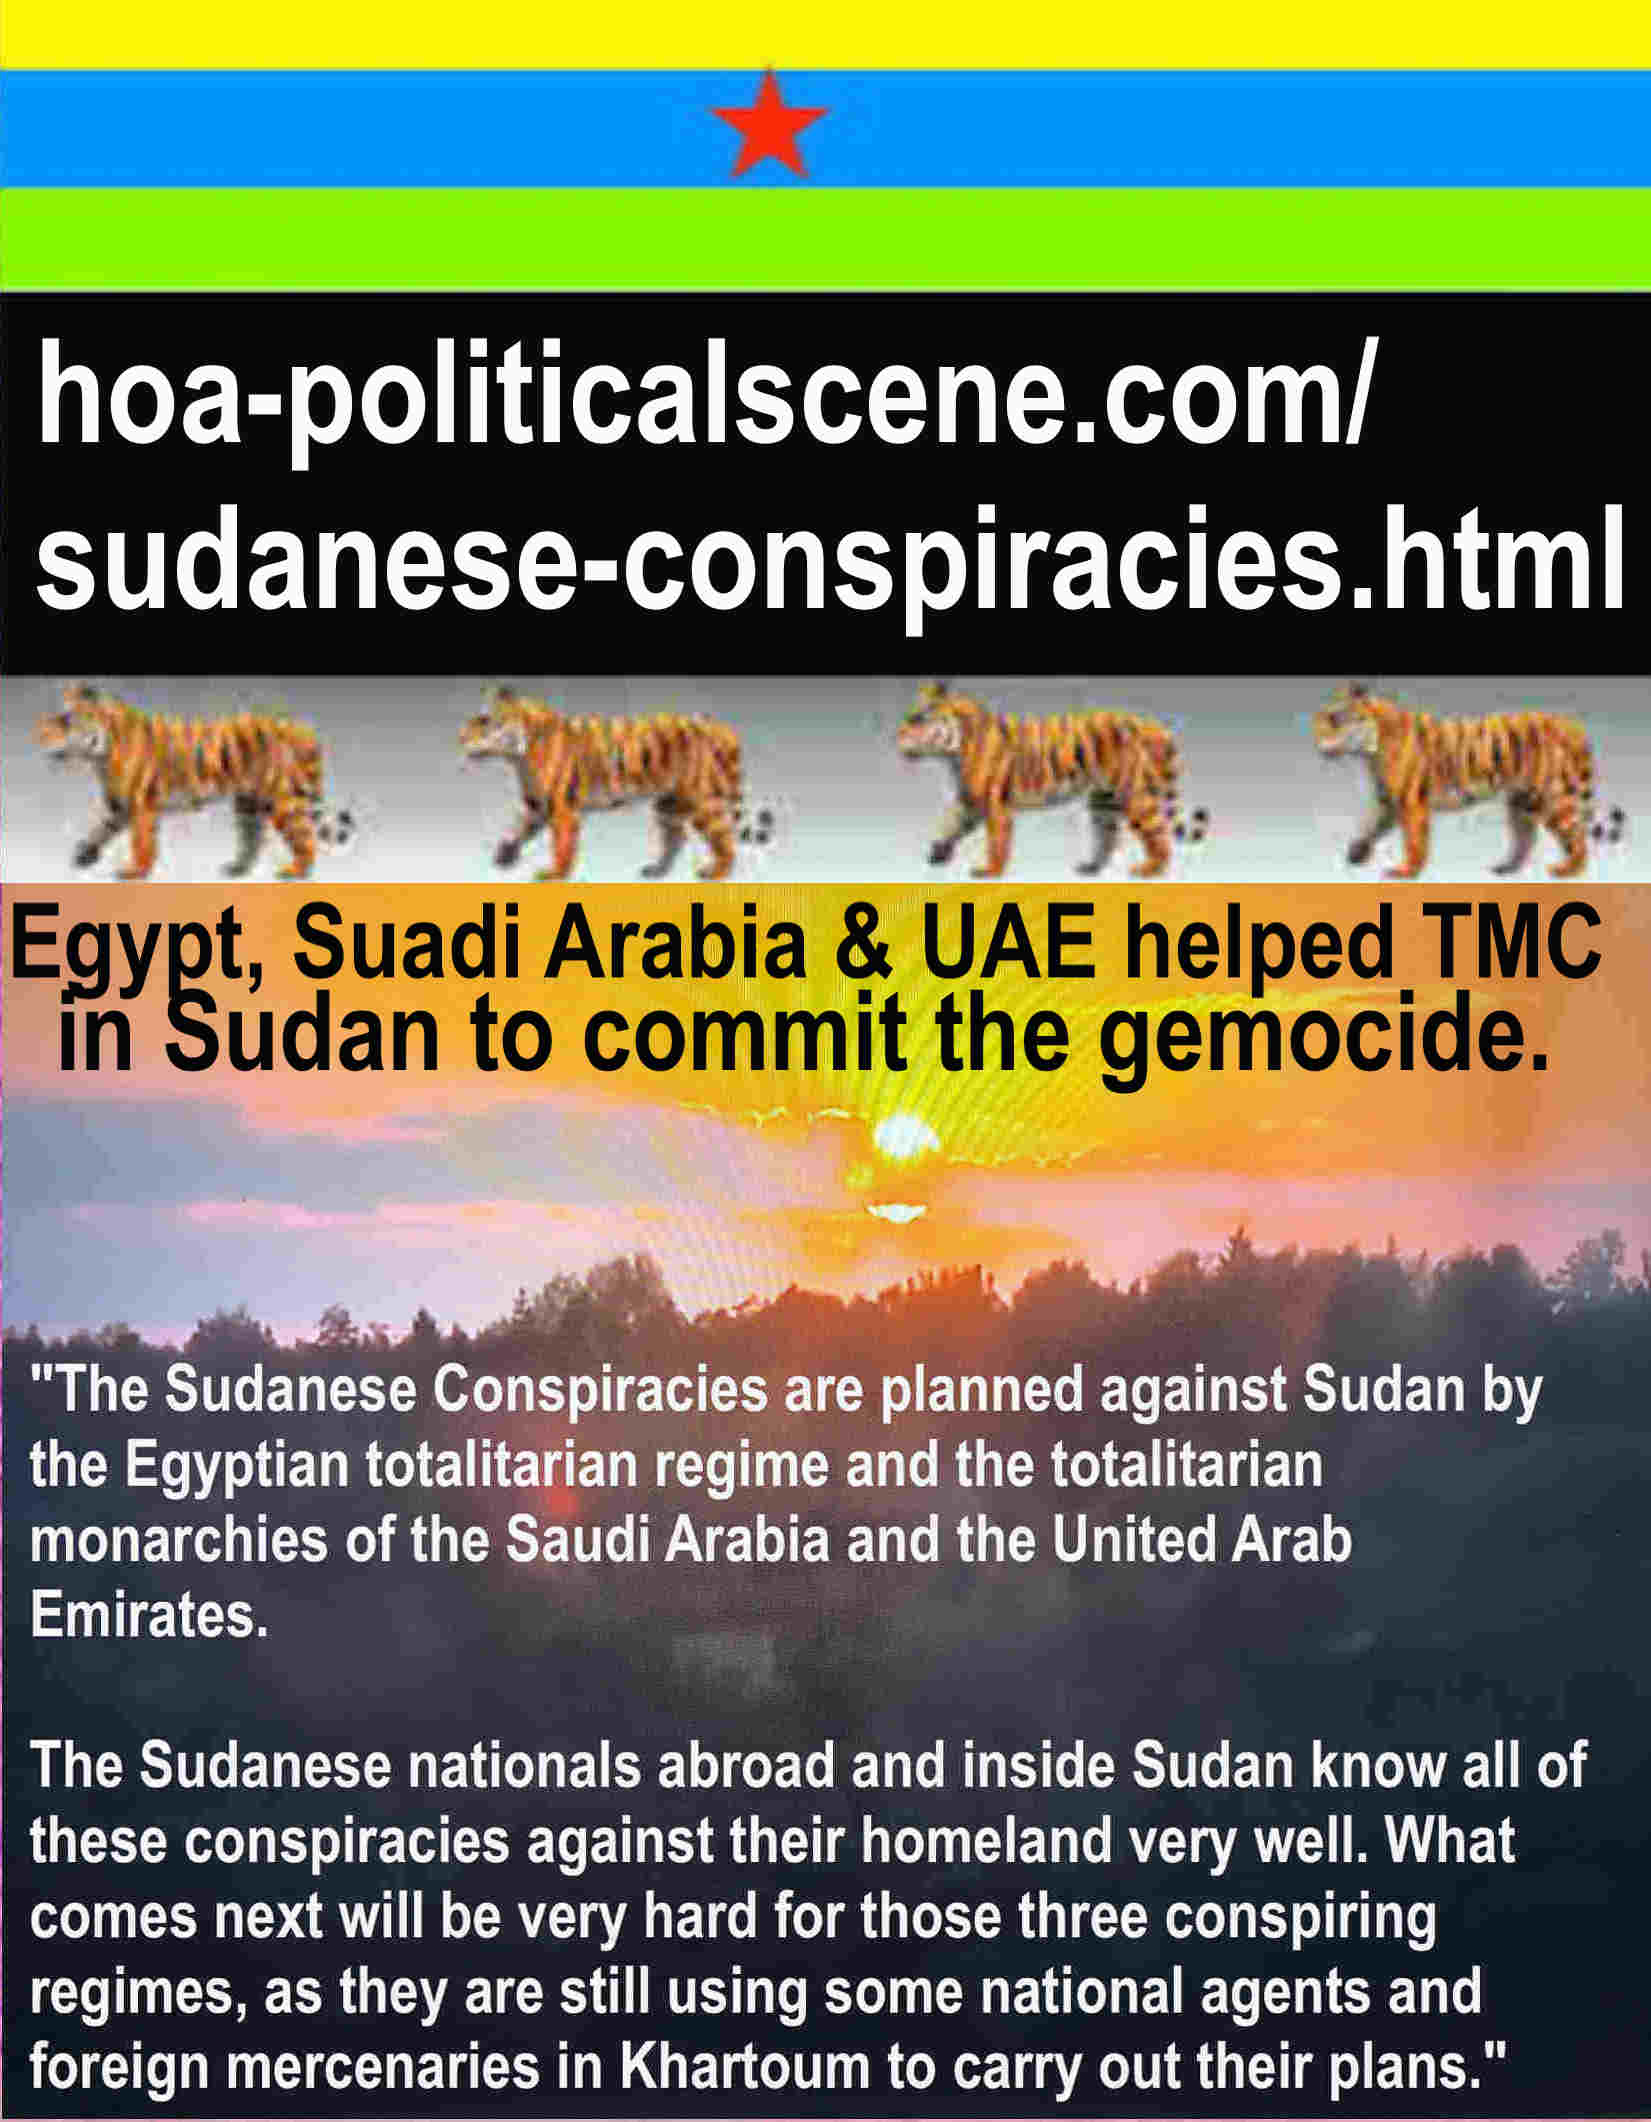 hoa-politicalscene.com/world-delusion.html - World Delusion: وهم العالم: لن ينجح السودانيون أبدا في الثورة بدون وجود الآليات الثلاث للثورة التقدمية التي أعددتها منذ سنوات. هذا يوقف المؤامرات الأجنبية